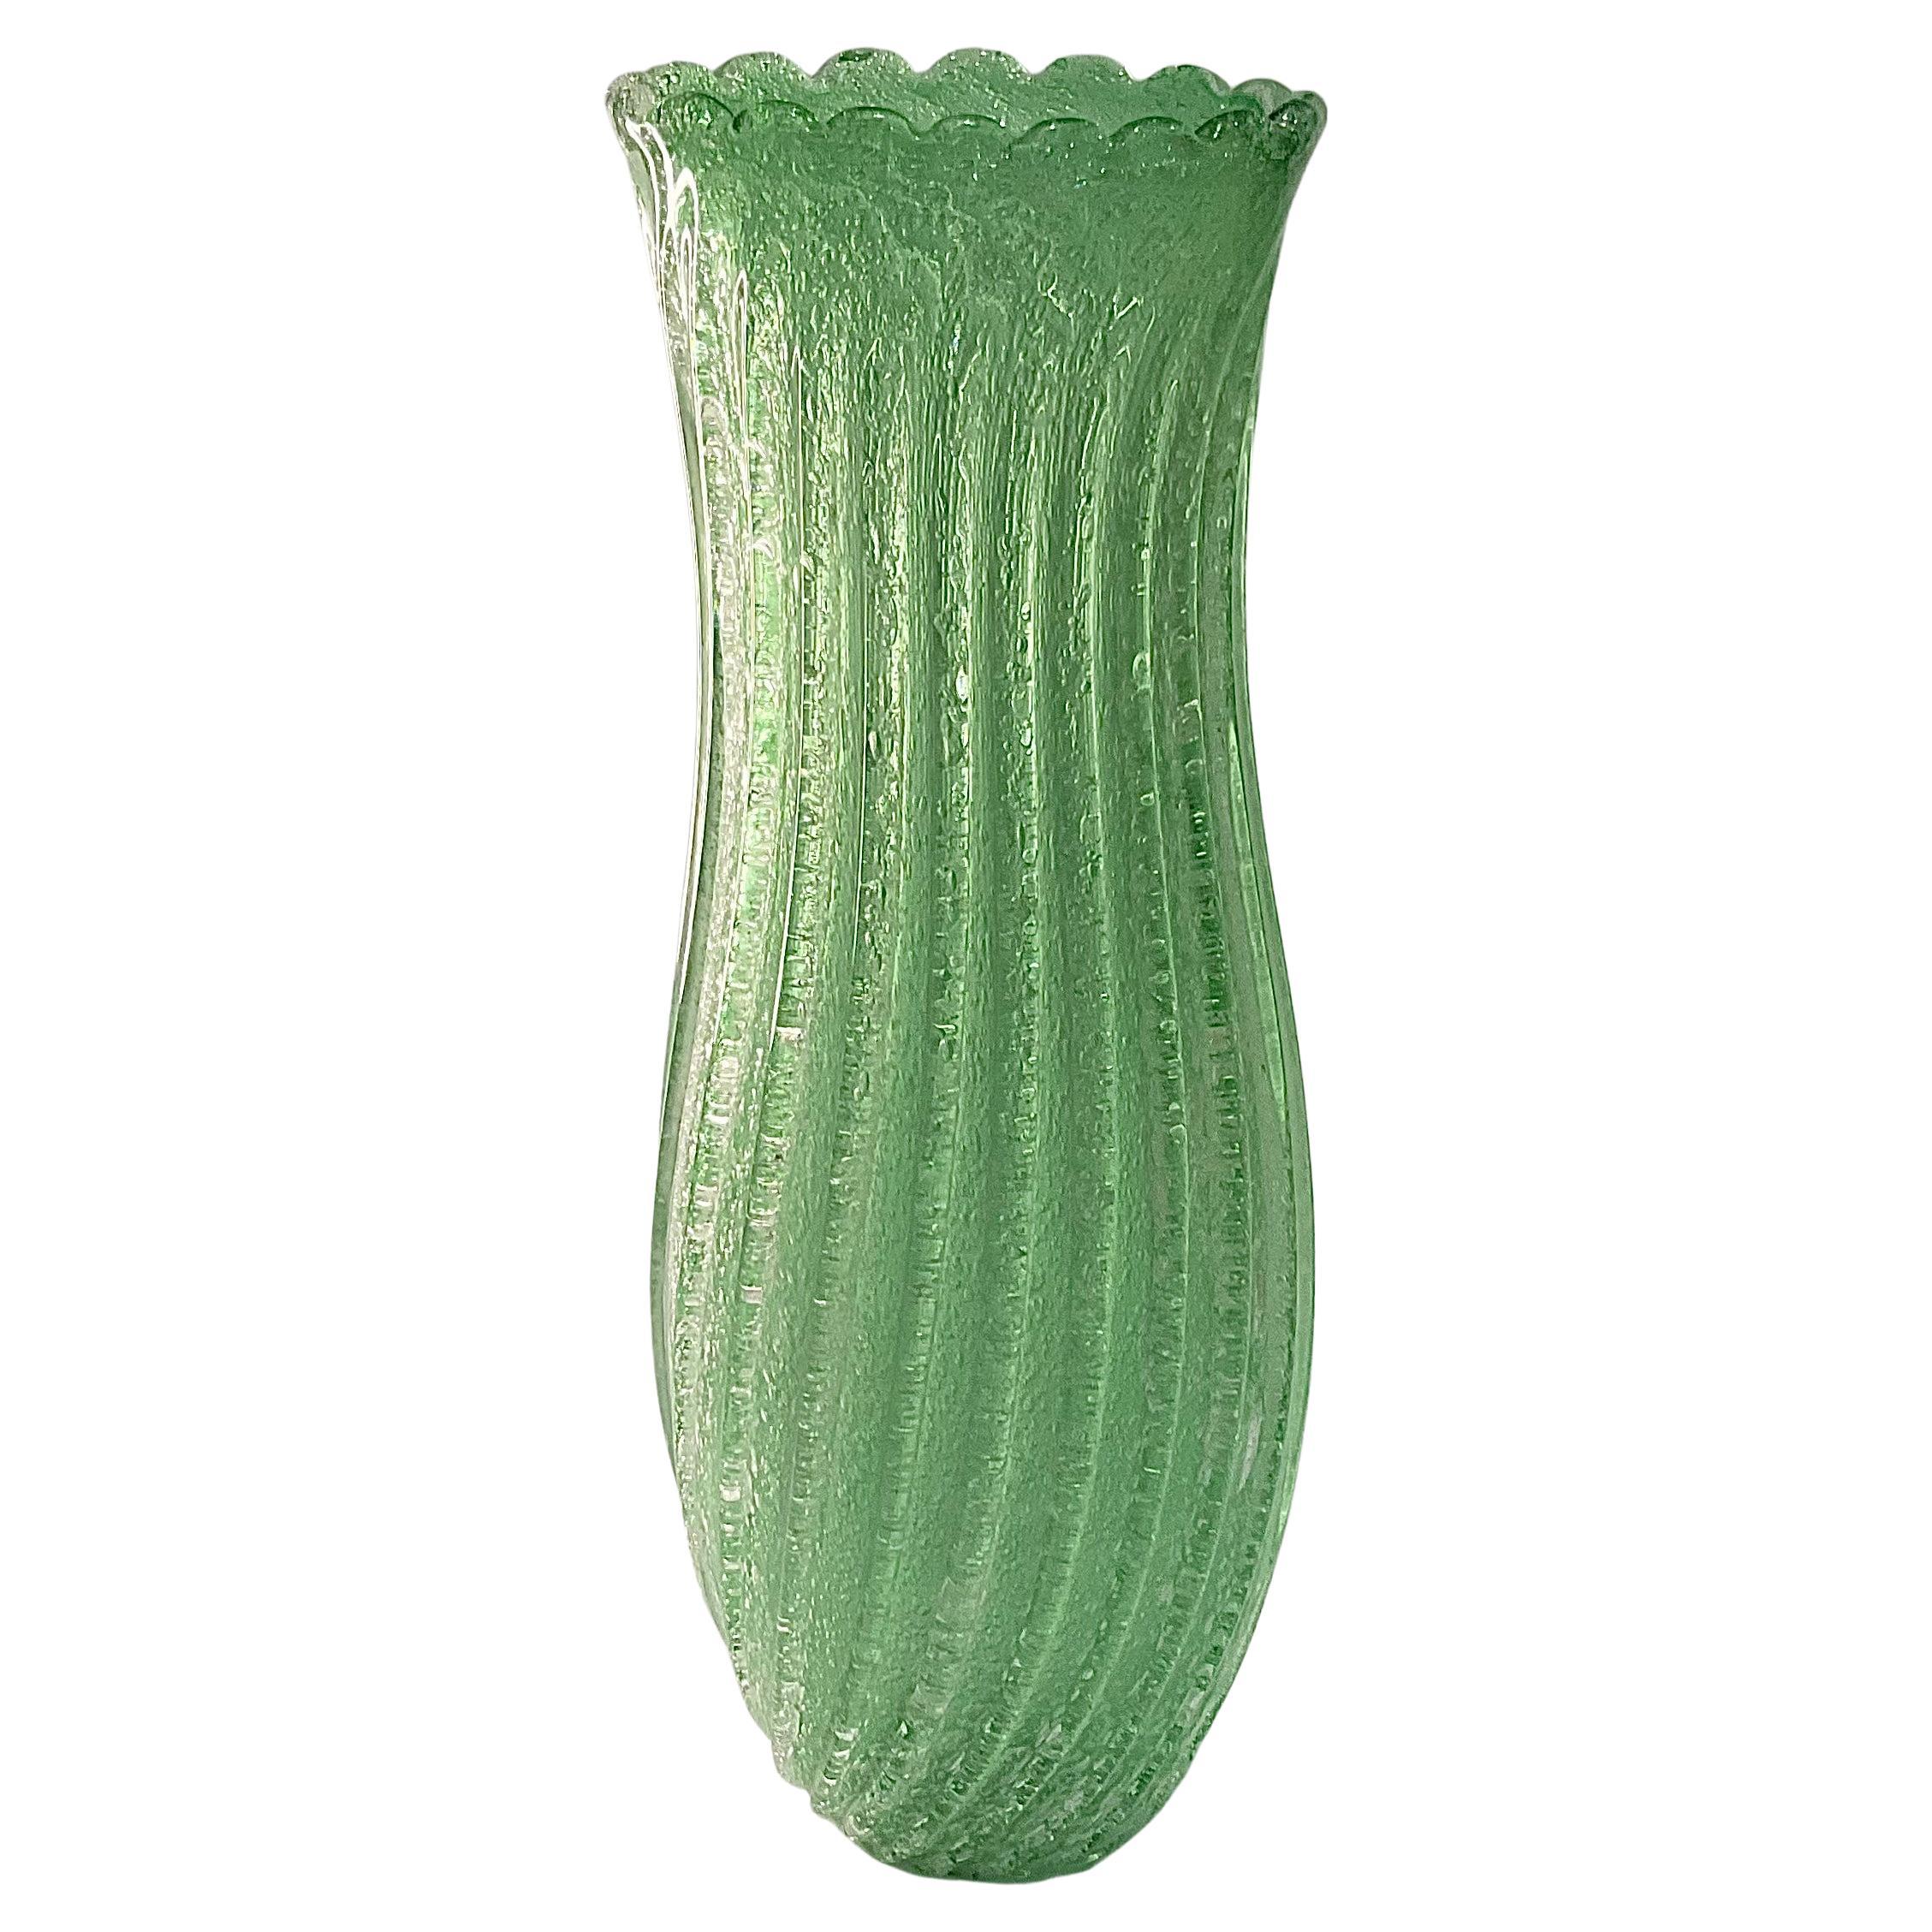 Große Vase aus Murano-Kunstglas in grünem Pulegoso-Glas mit geripptem Design und Wellenschliff